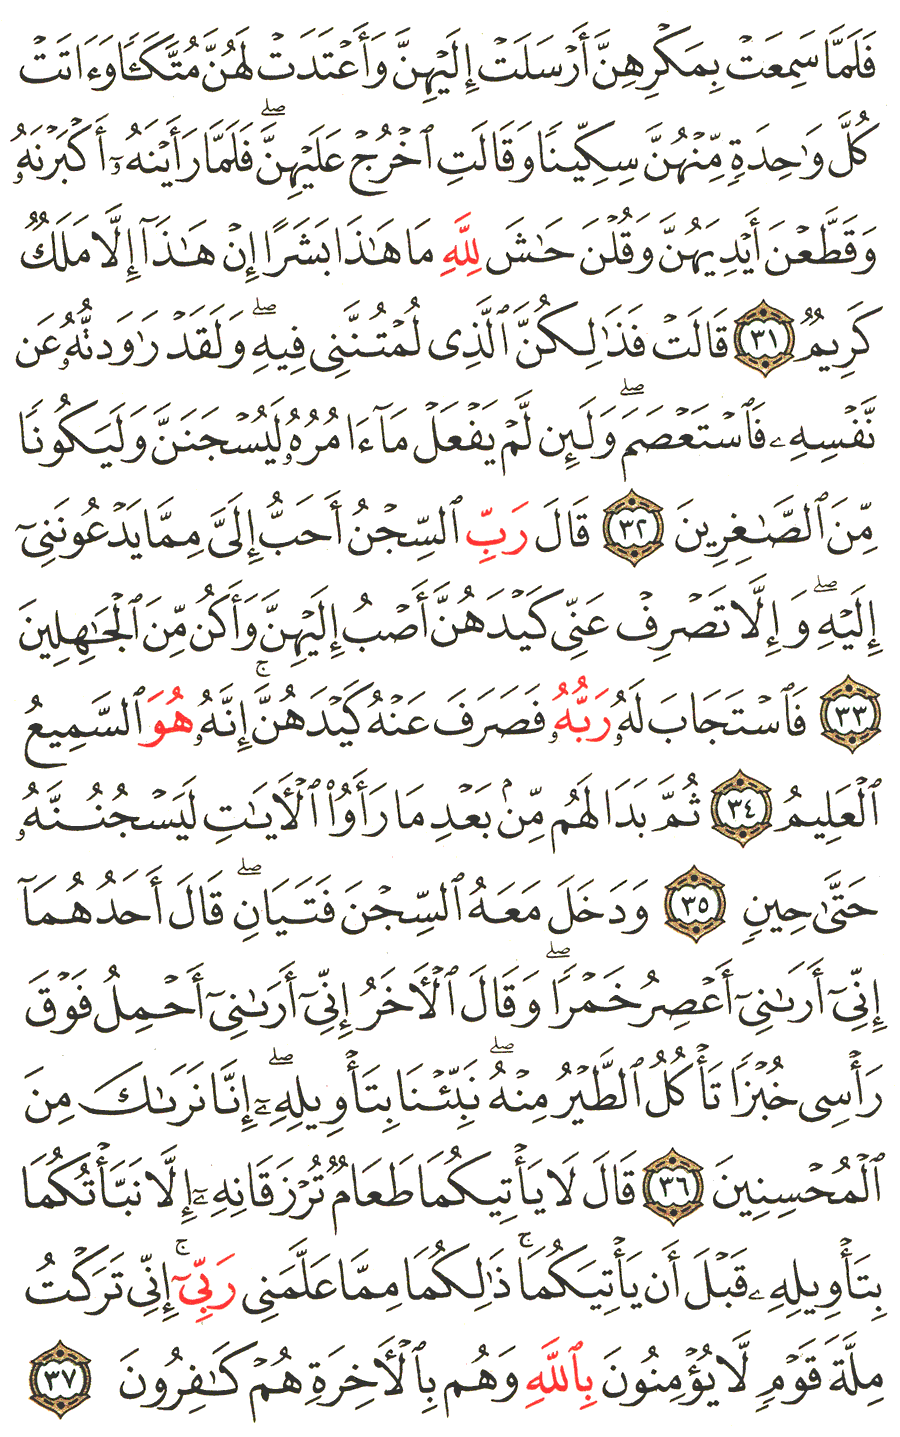 الصفحة 239 من القرآن الكريم